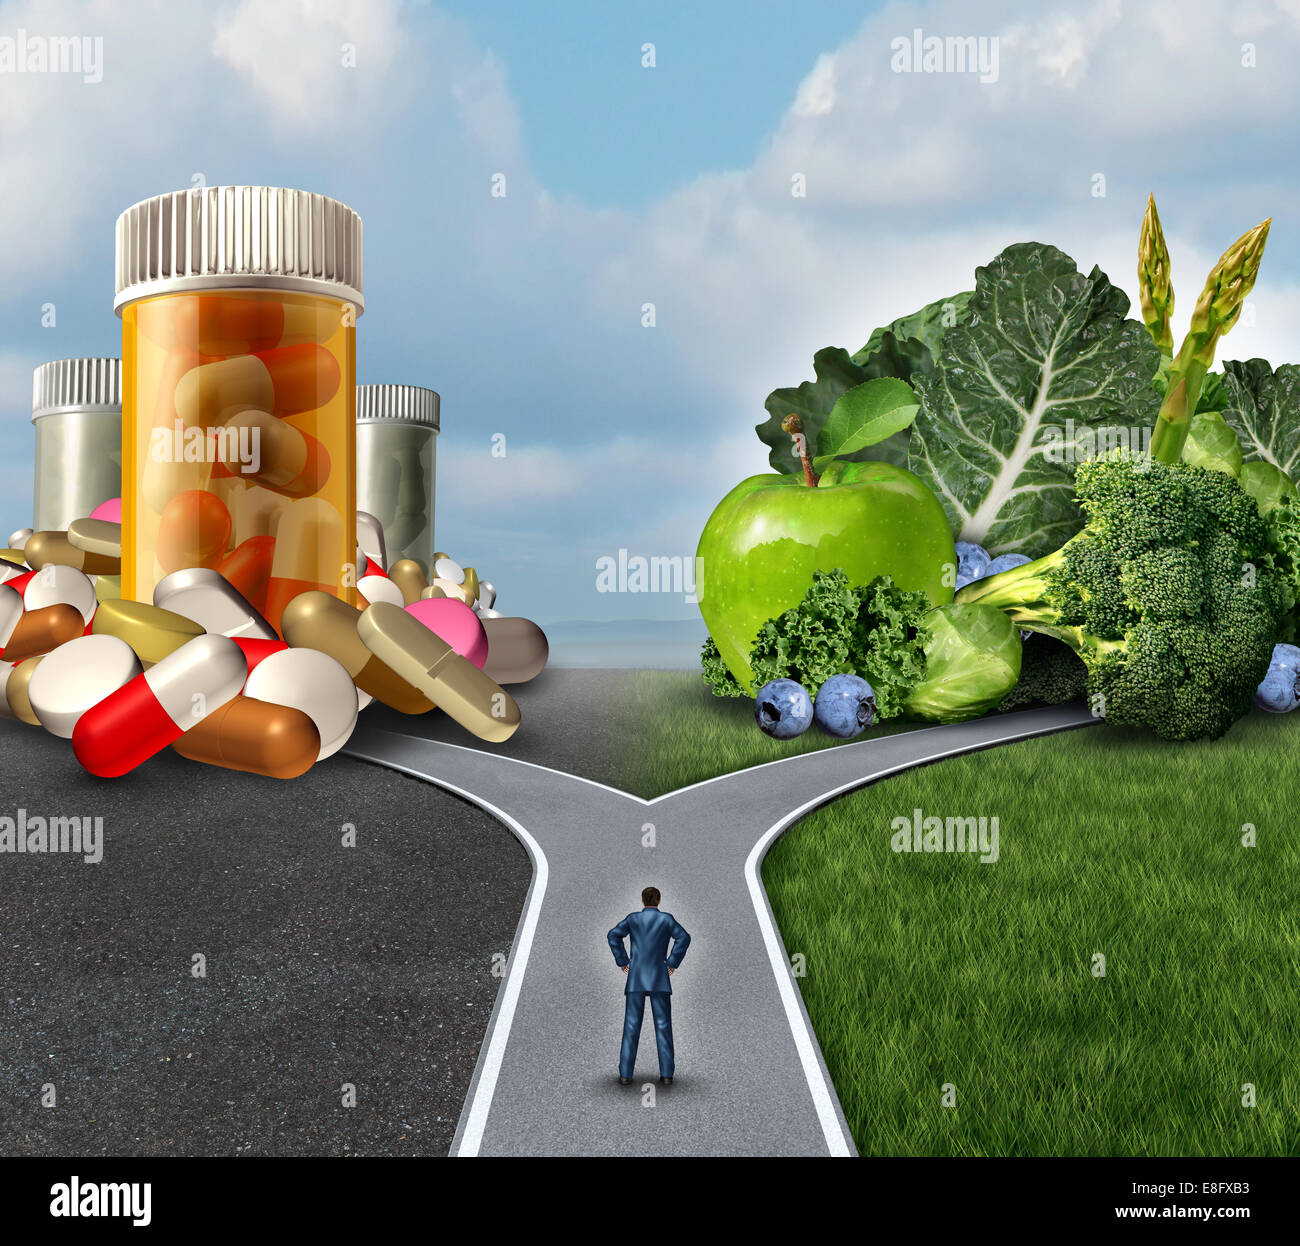 Medikamente Entscheidung Konzept und Naturheilmittel Ernährung Entscheidungen Dilemma zwischen gesunde frische Obst und Gemüse oder pharmazeutischen Pillen und Medikamente mit einem Mann auf eine Kreuzung, die versuchen, der beste Weg zur Gesundheit zu entscheiden. Stockfoto